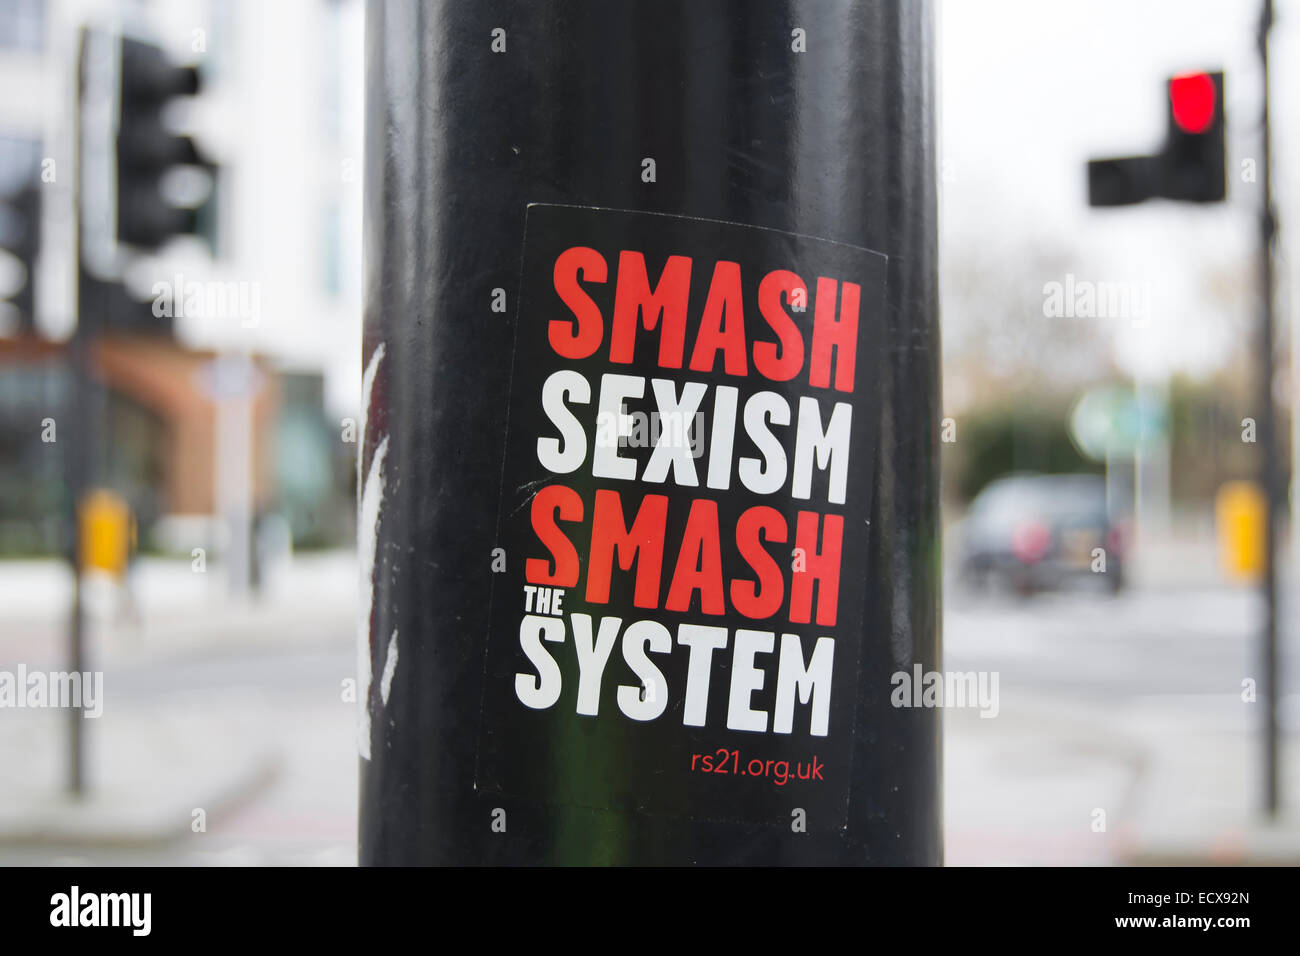 Smash Sexismus zu zerschlagen, das System, street Flyer herausgegebenen rs21 oder revolutionären Sozialismus im 21. Jahrhundert Stockfoto